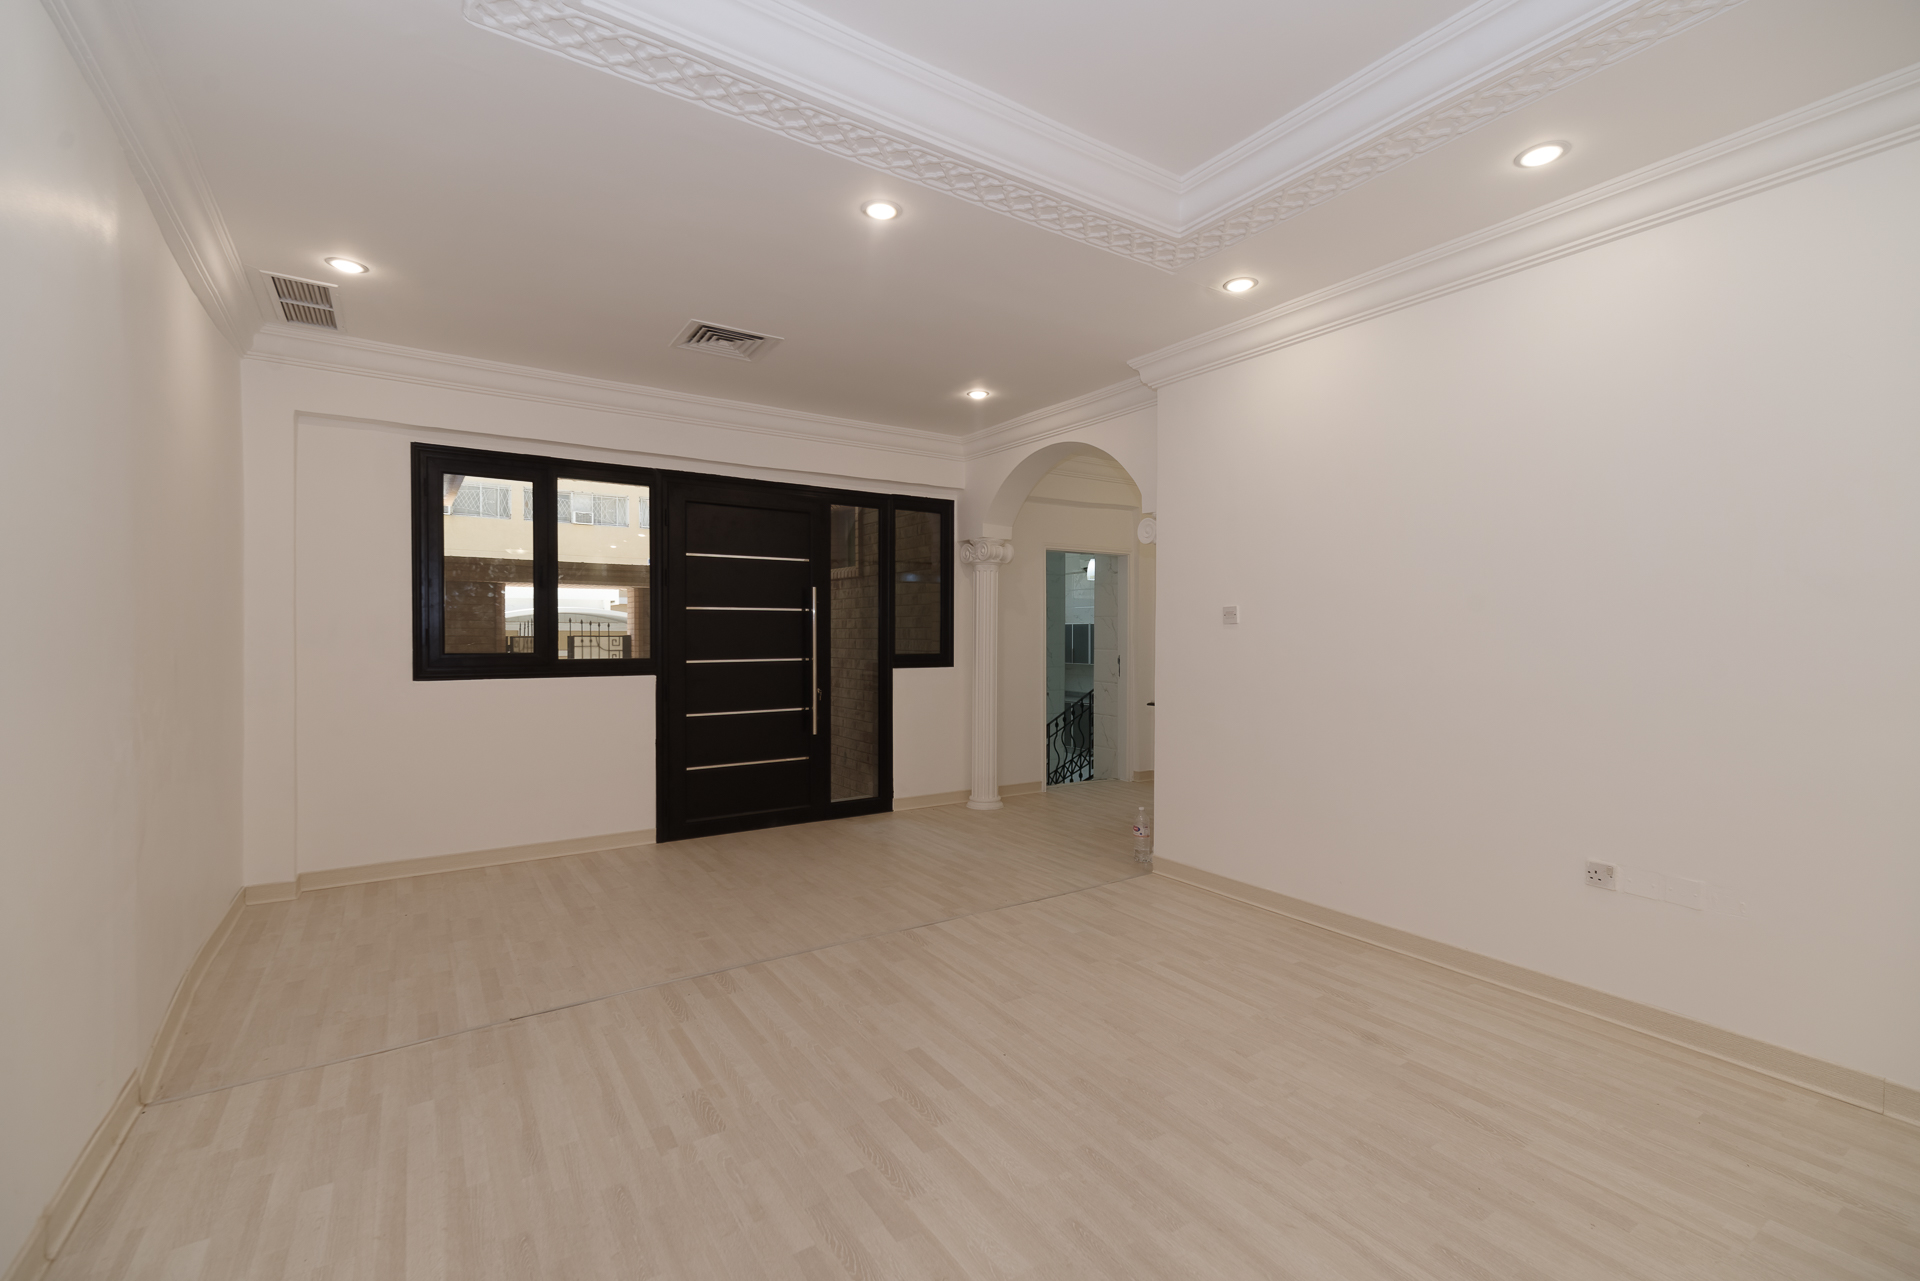 Qadsiya – older, spacious five bedroom ground floor